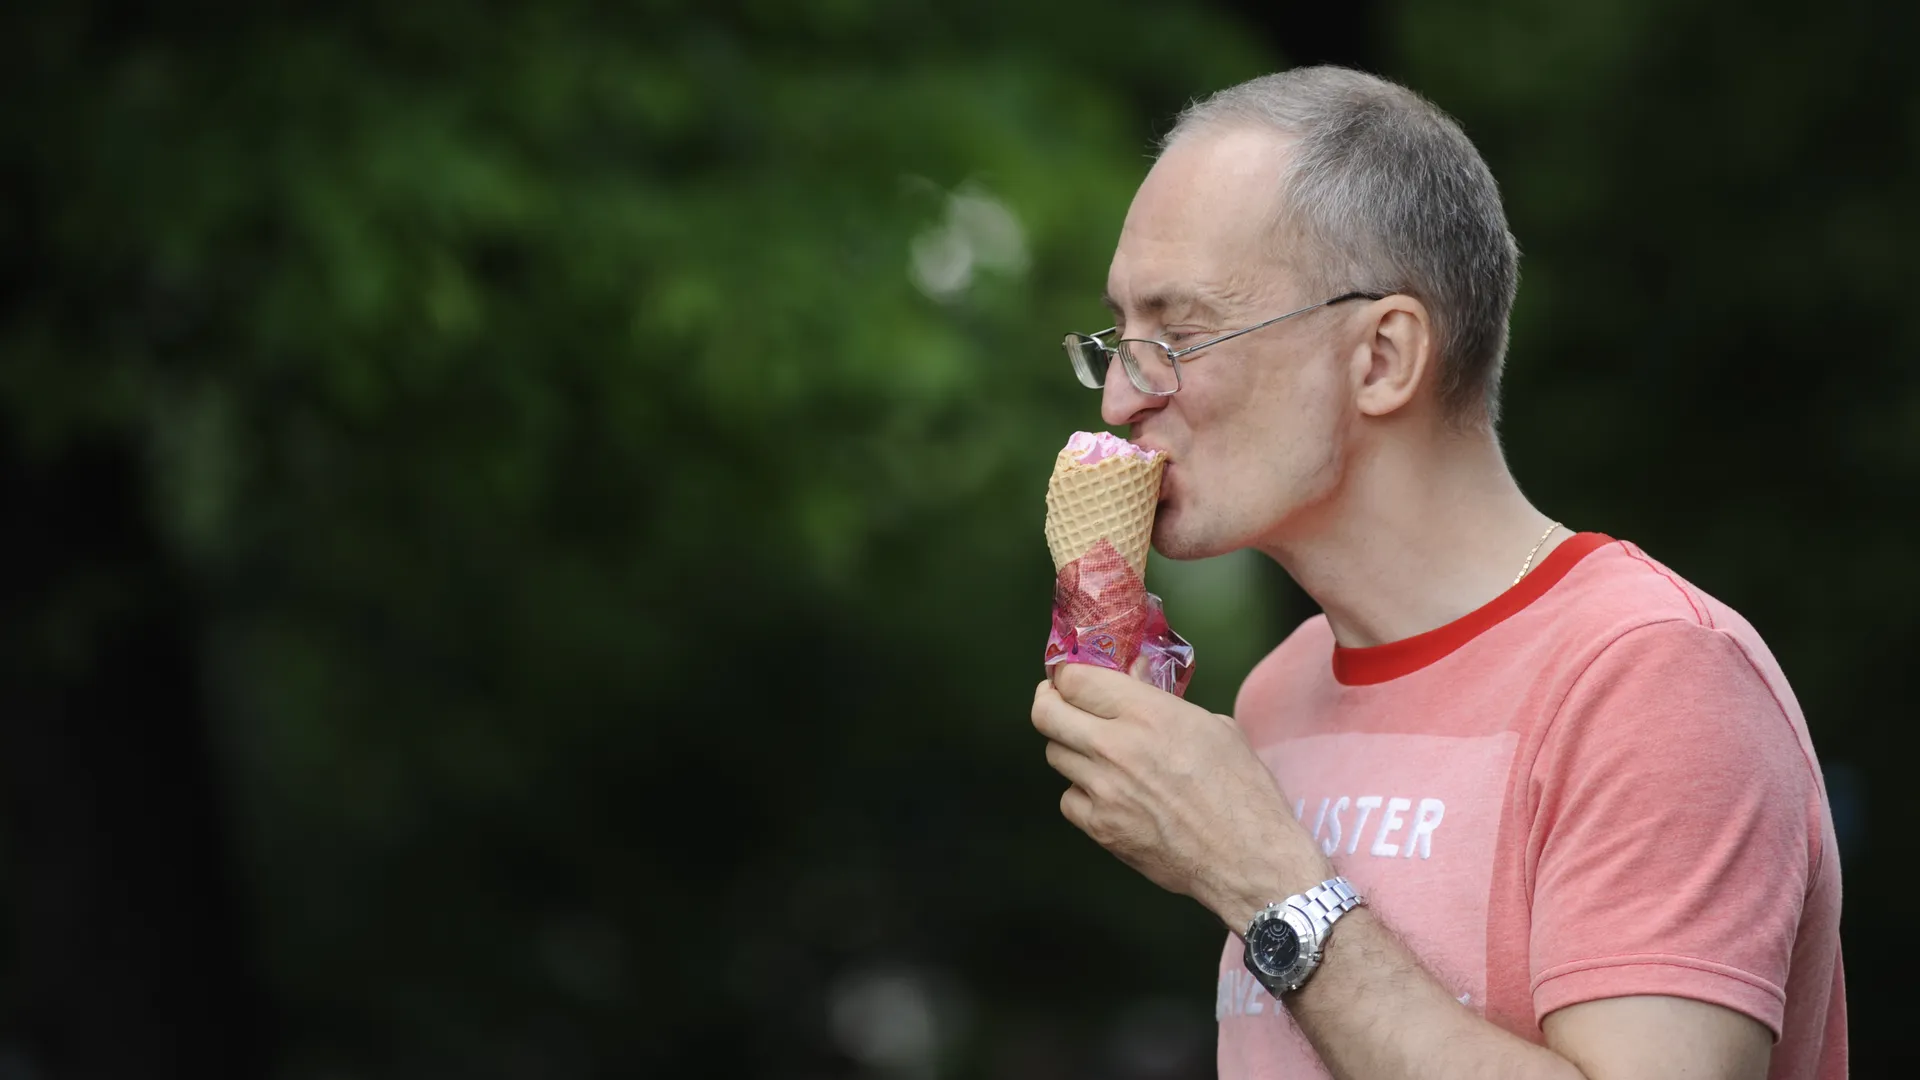 Потребление мороженого увеличивает количество прыщей у человека — врач